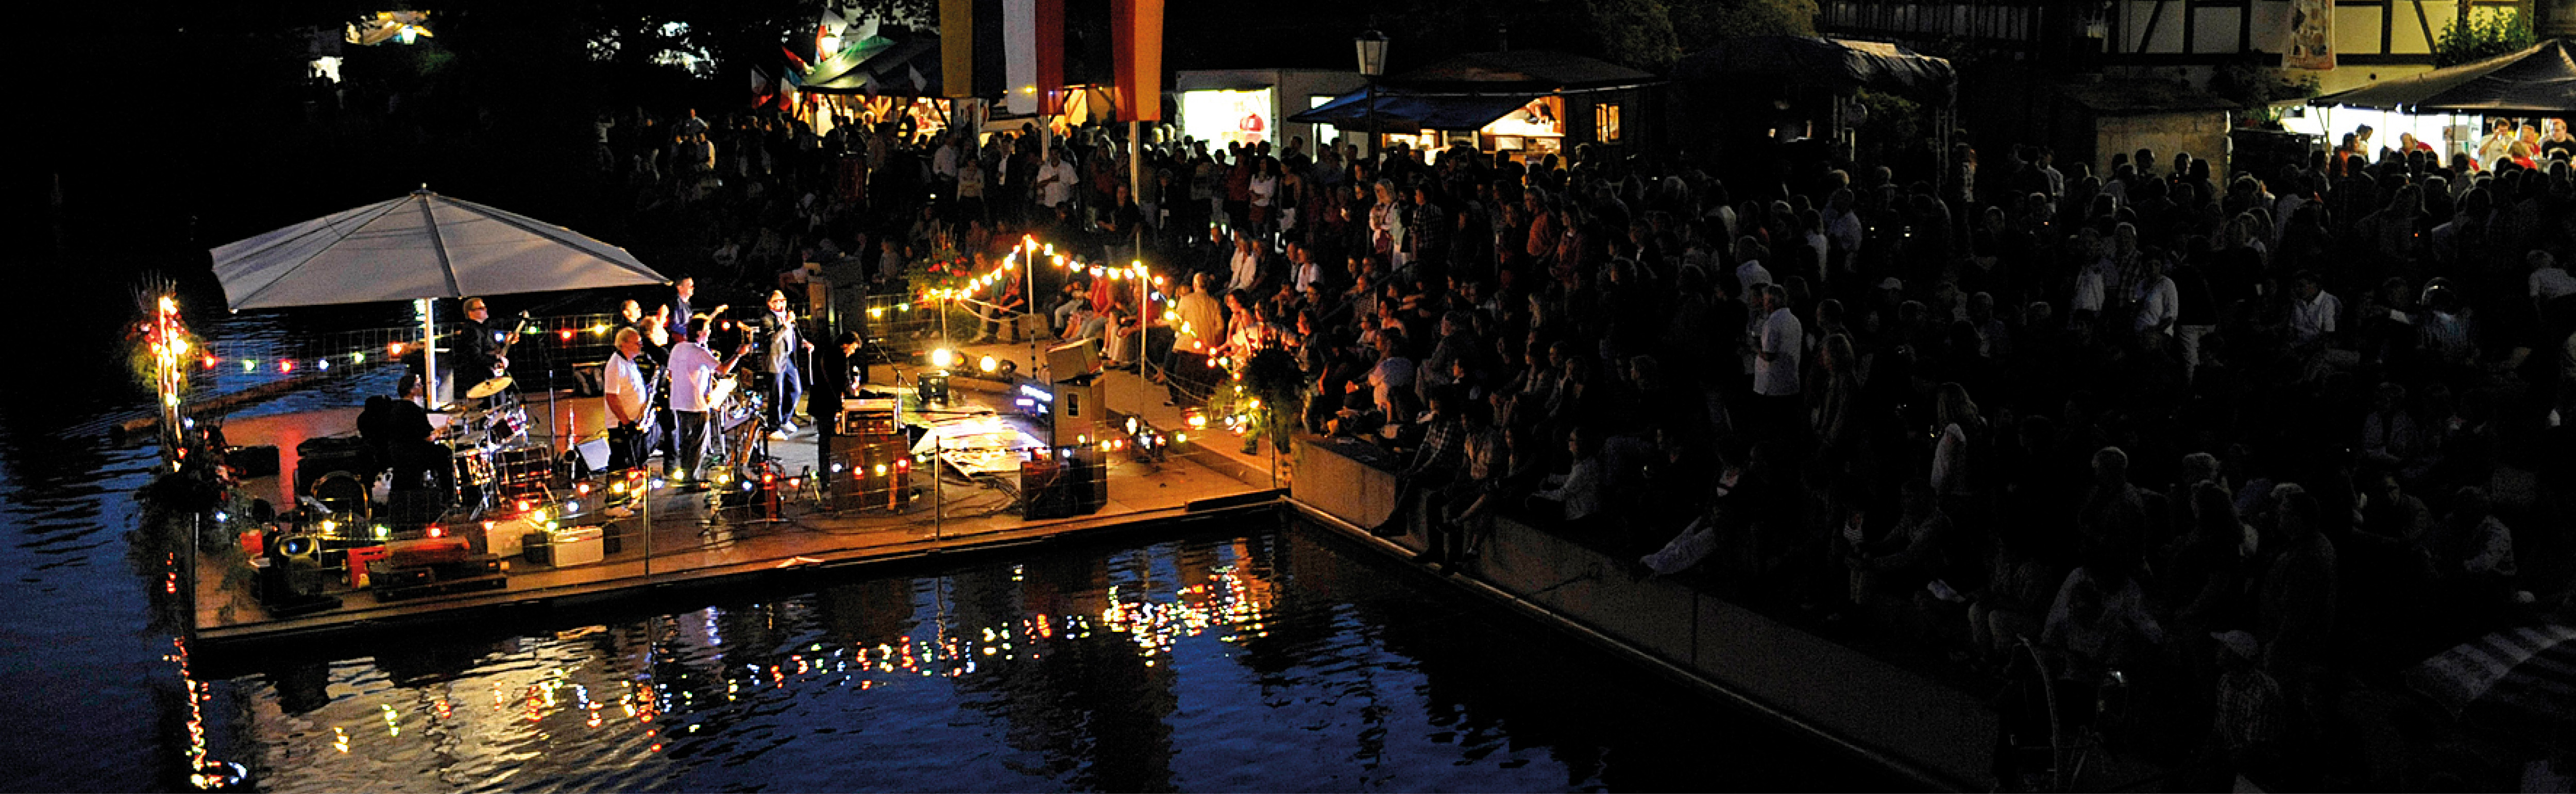 Beleuchtete Bühne mit Band auf dem Neckar und Publikum am Ufer